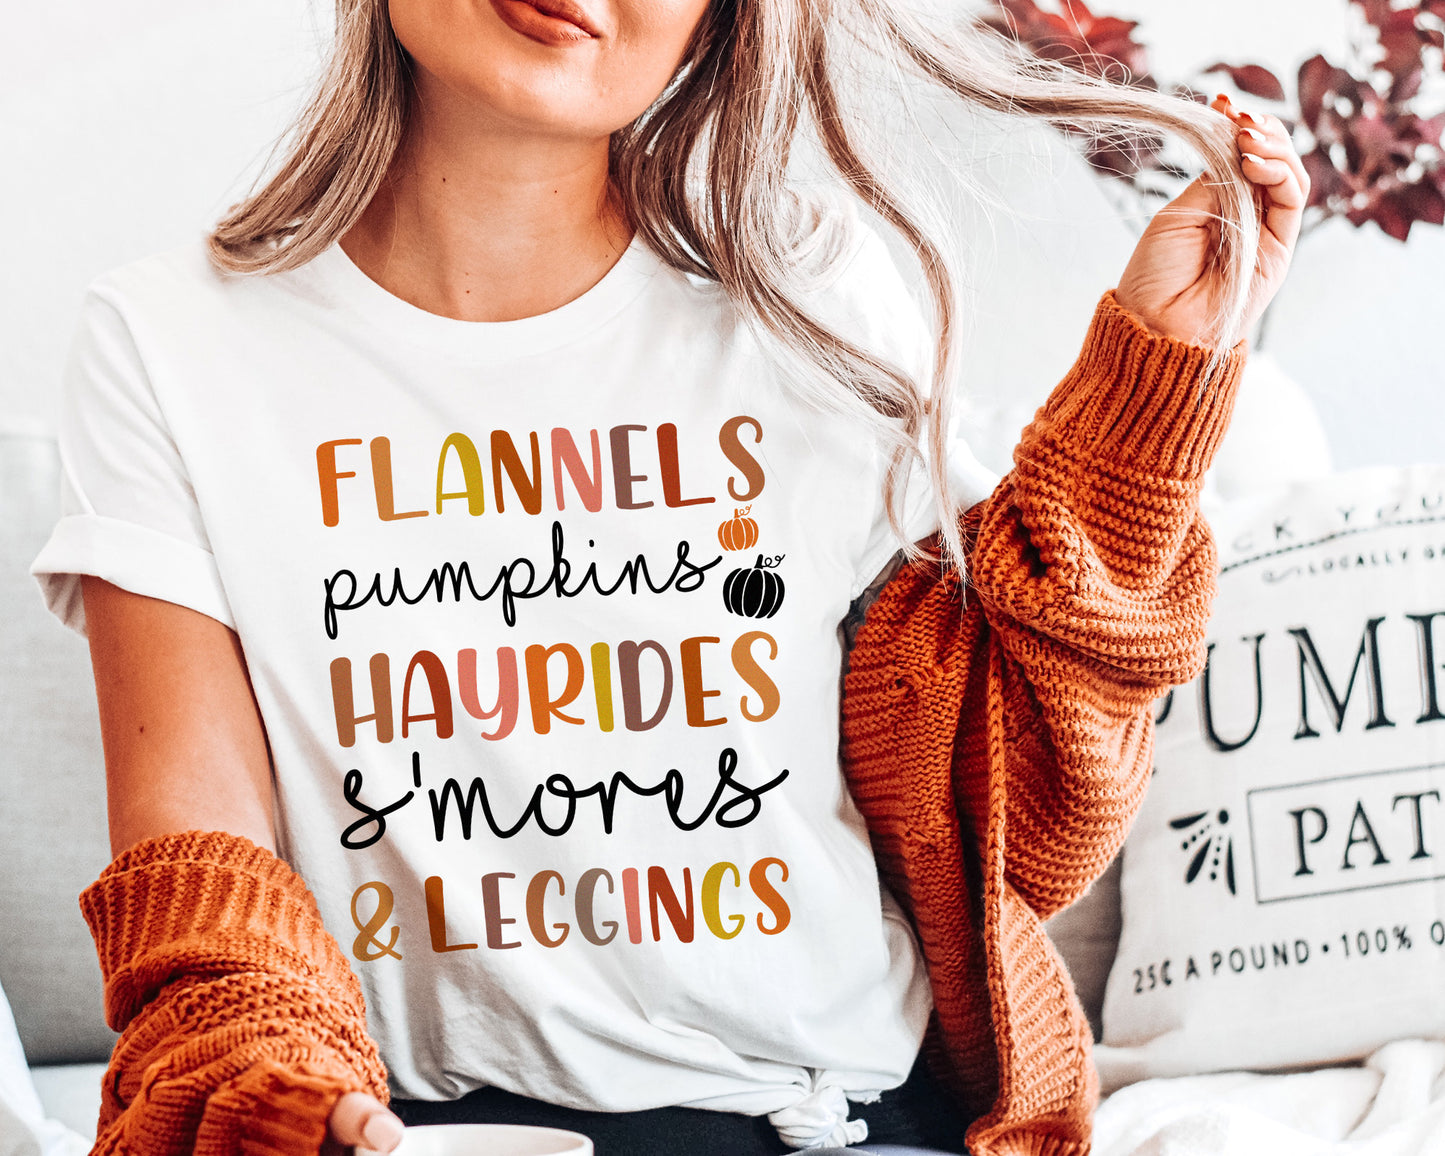 Pumpkins Bonfires T-skjorte